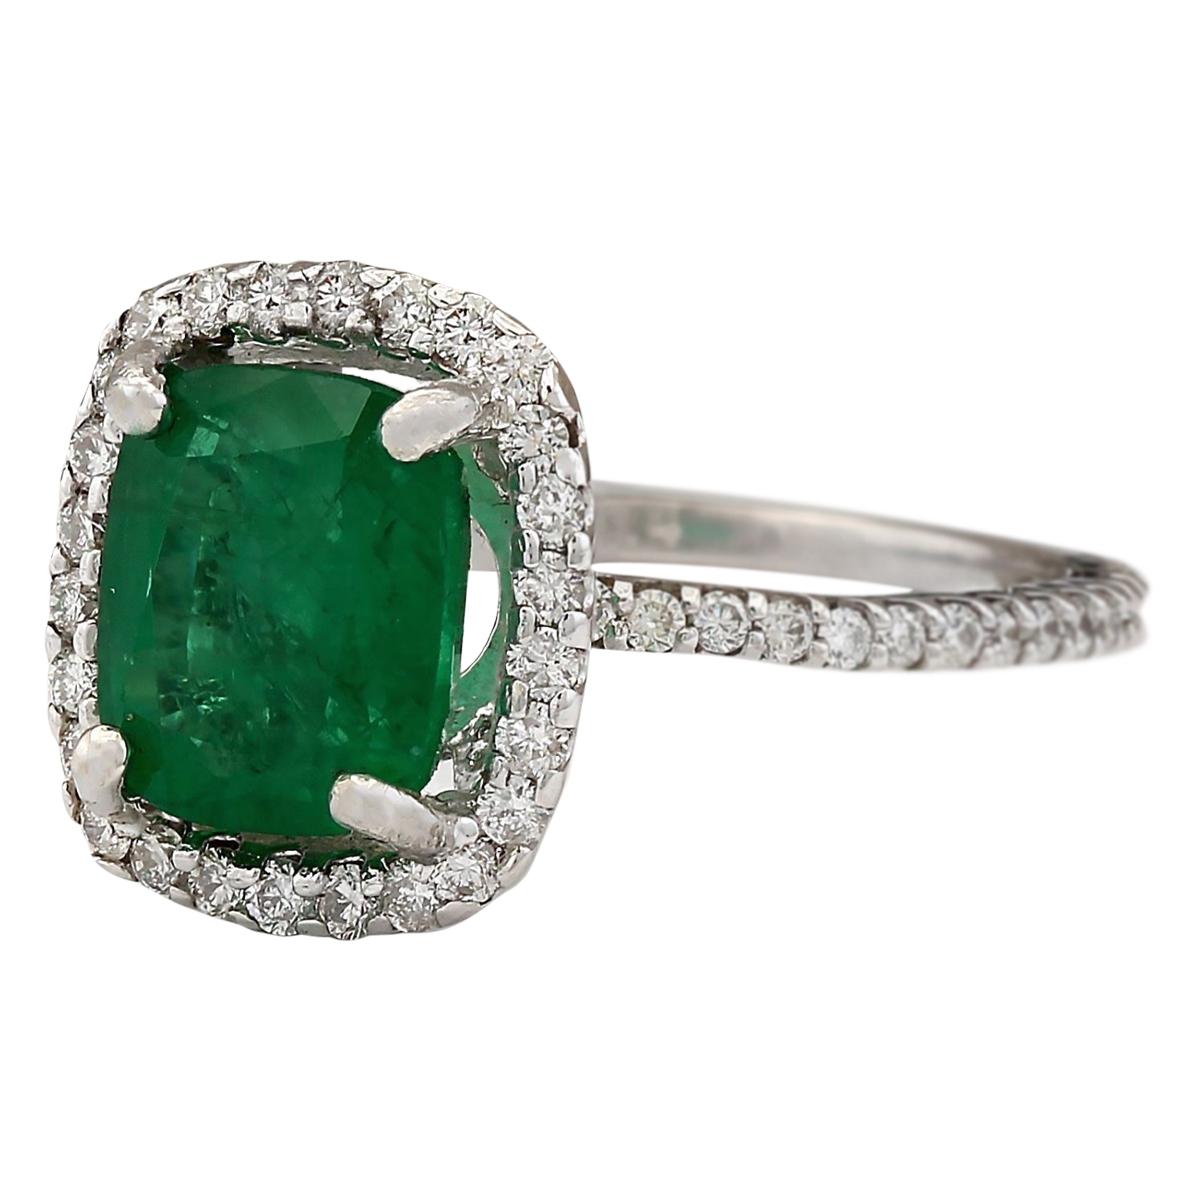 3.21 Carat Natural Emerald 14 Karat White Gold Diamond Ring
Stamped: 14K White Gold
Total Ring Weight: 4.1 Grams
Total Natural Emerald Weight is 2.46 Carat (Measures: 9.00x7.00 mm)
Color: Green
Total Natural Diamond Weight is 0.75 Carat
Color: F-G,